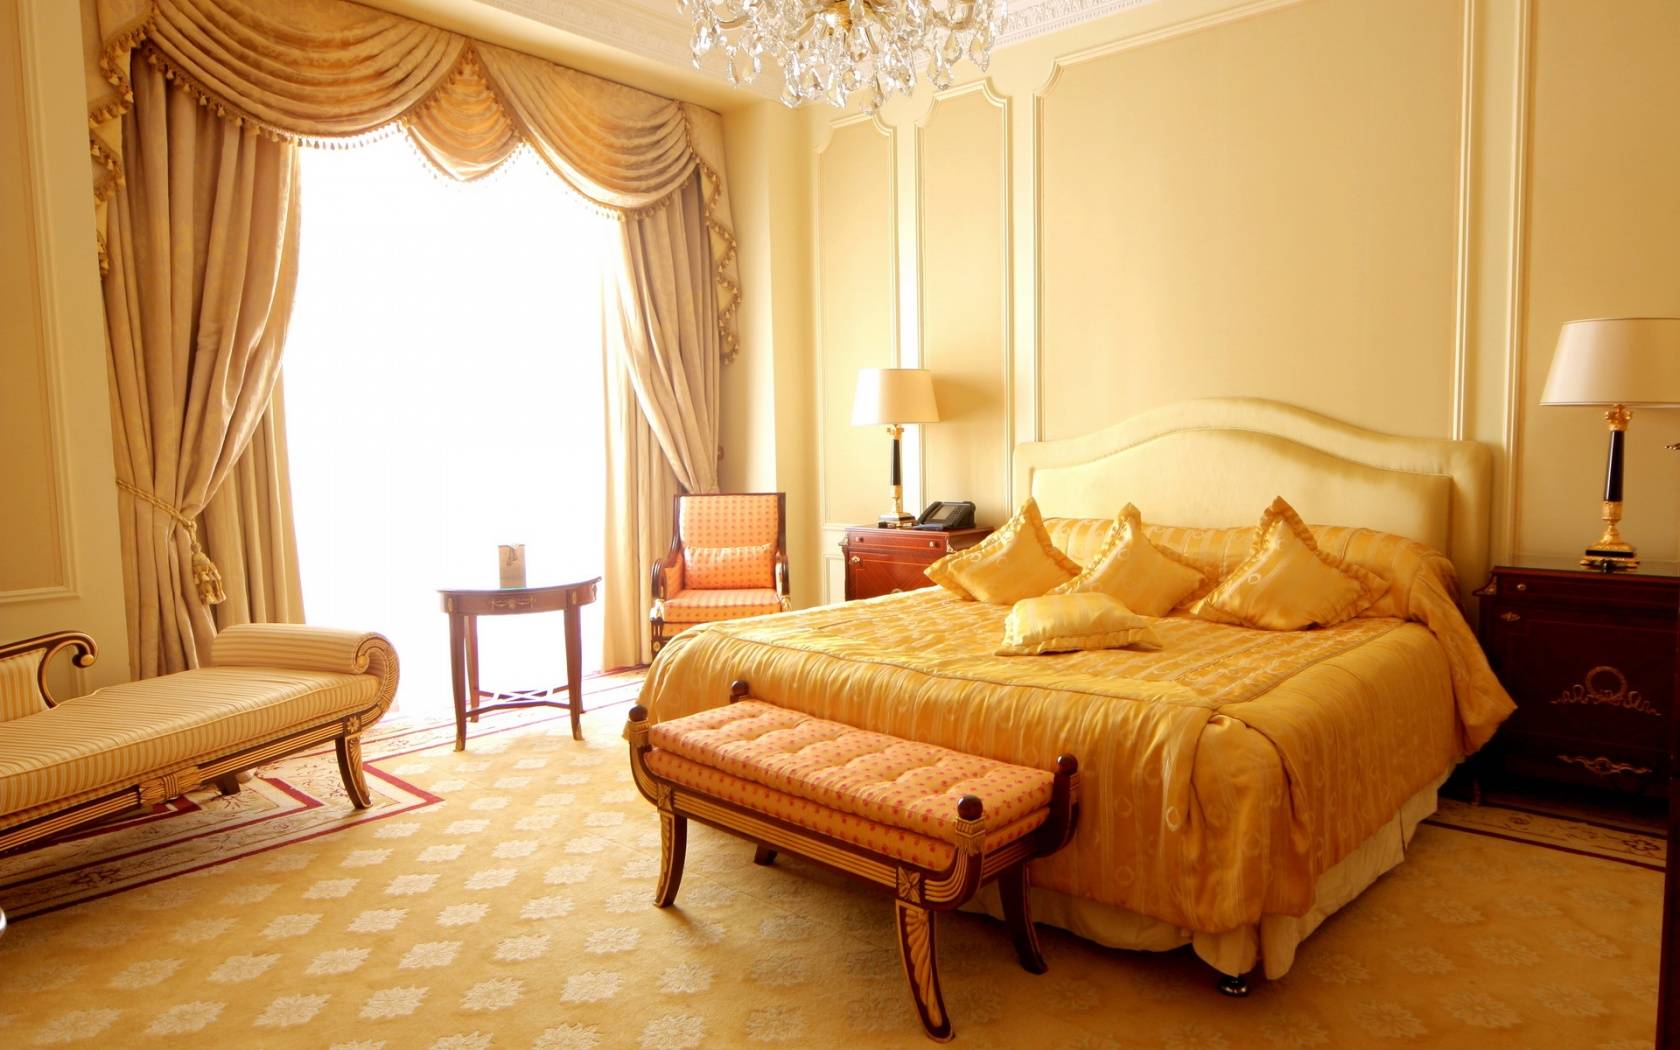 prekrasan stil spavaće sobe u raznim bojama